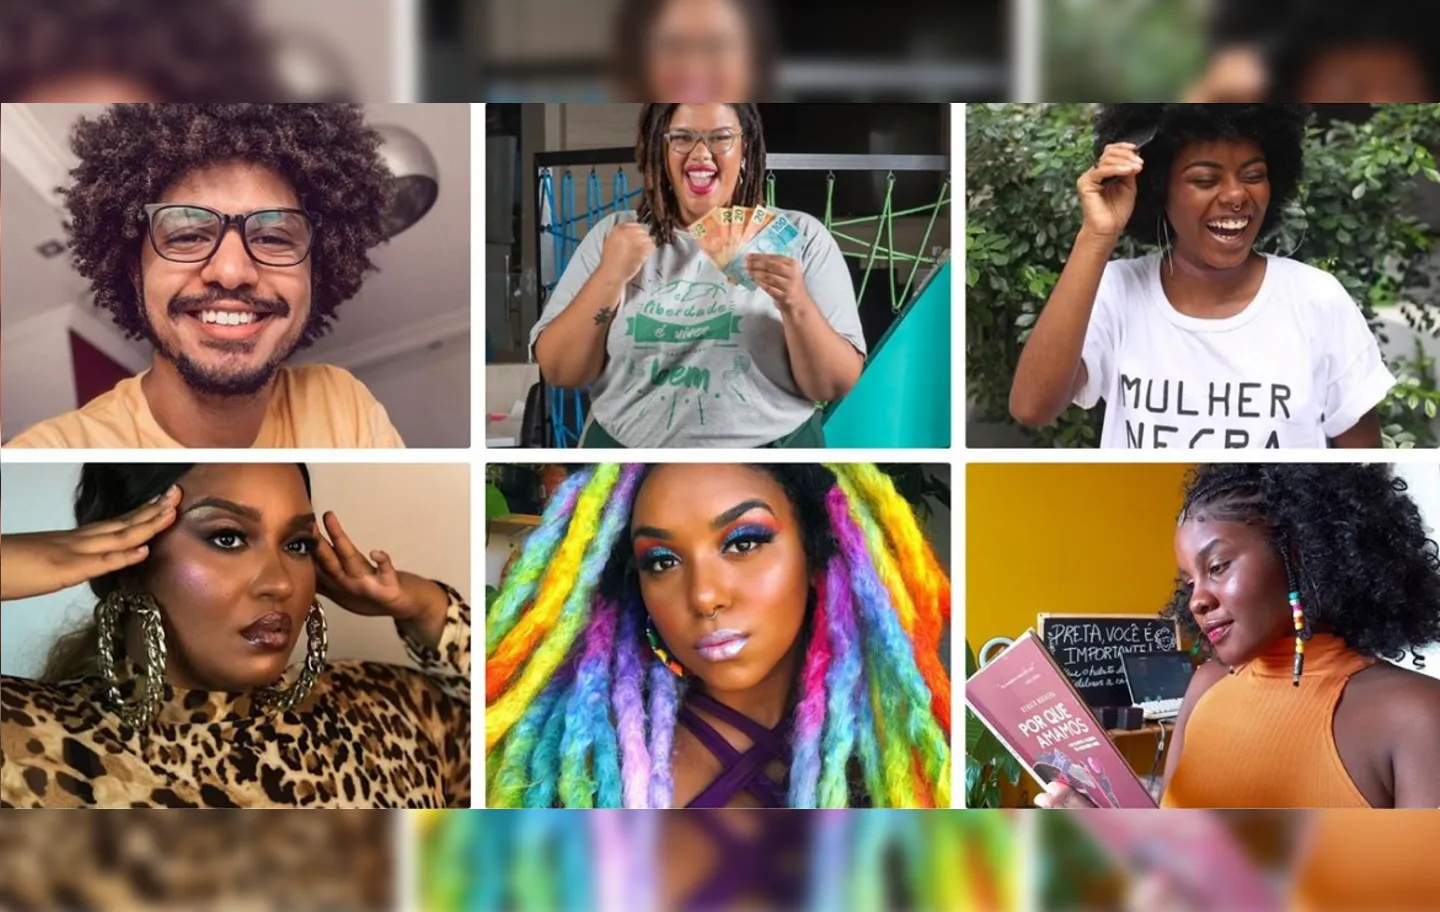 Apenas oito dos 100 maiores canais do YouTube são pertencentes à pessoas negras. Quando se fala em influenciadores negros nordestinos e baianos, a visibilidade diminui ainda mais | Fotos: Reprodução | Instagram